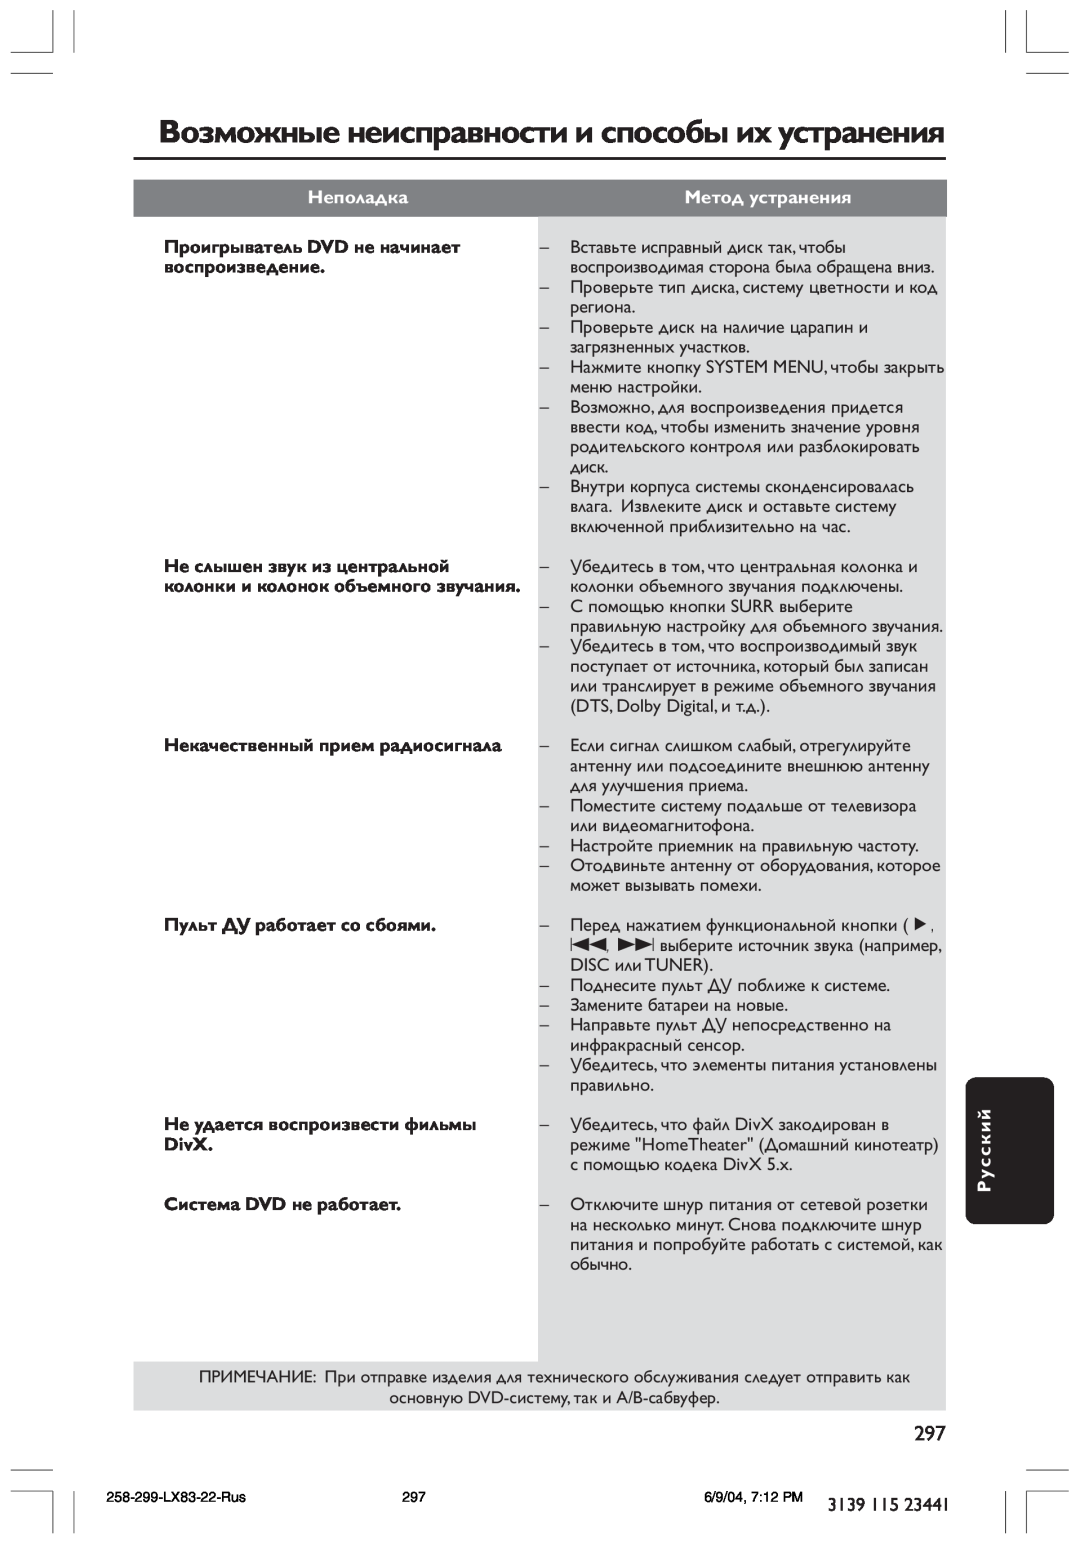 Philips LX8300SA user manual Возможные неисправности и способы их устранения, Неполадка, Метод устранения, Русский 